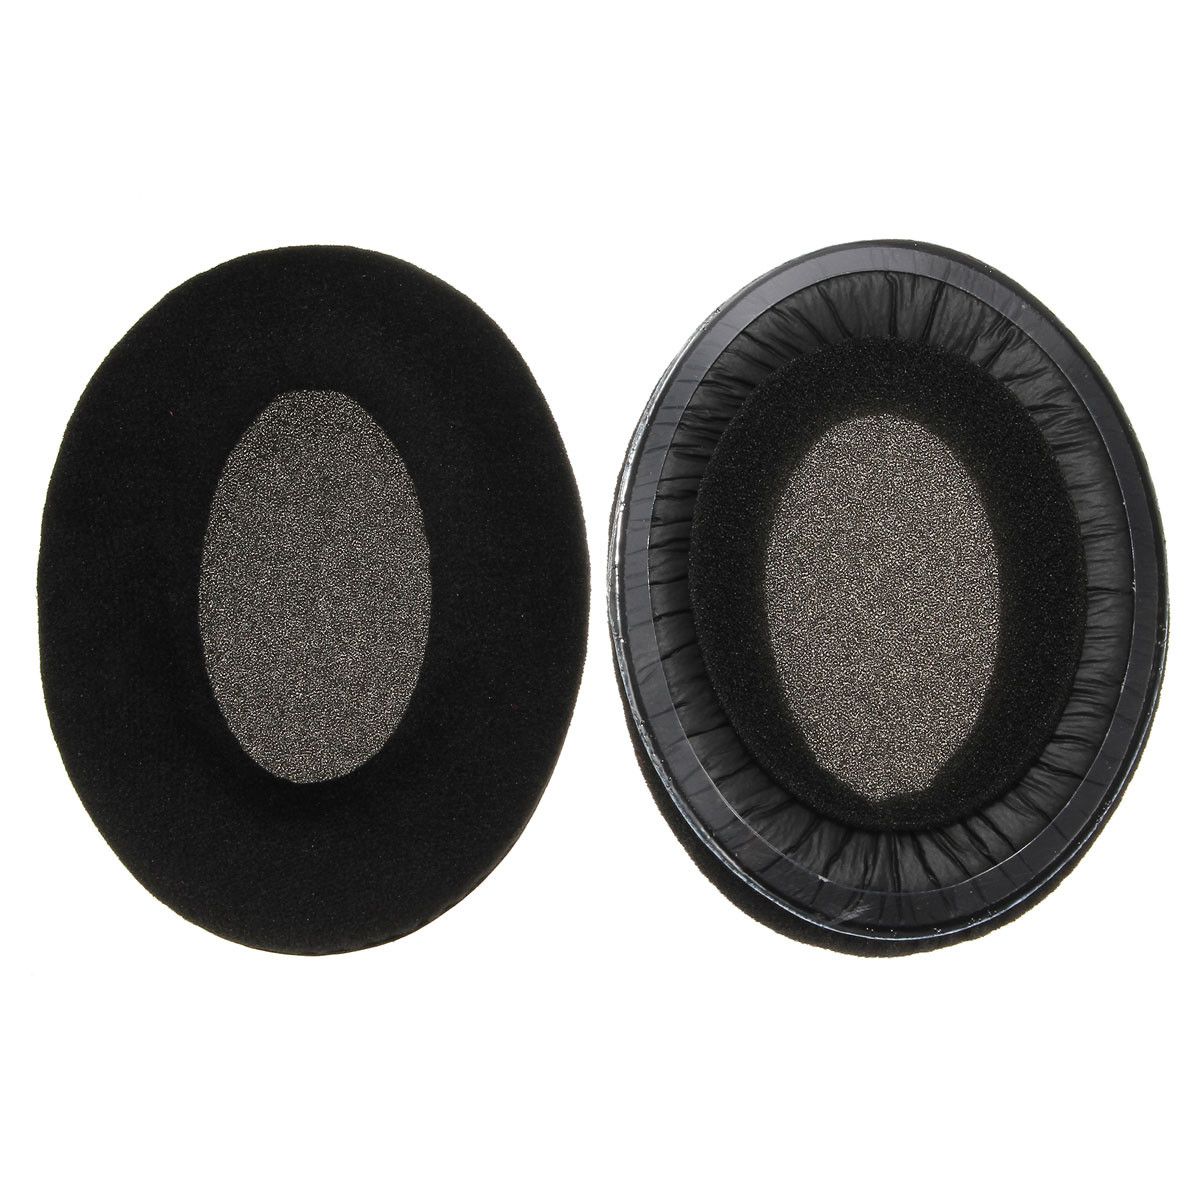 Soft-Foam-Replacement-Ear-Pad-Cup-Cushion-for-Sennheiser-HD515-HD555-HD595-HD518-Headphone-1066516